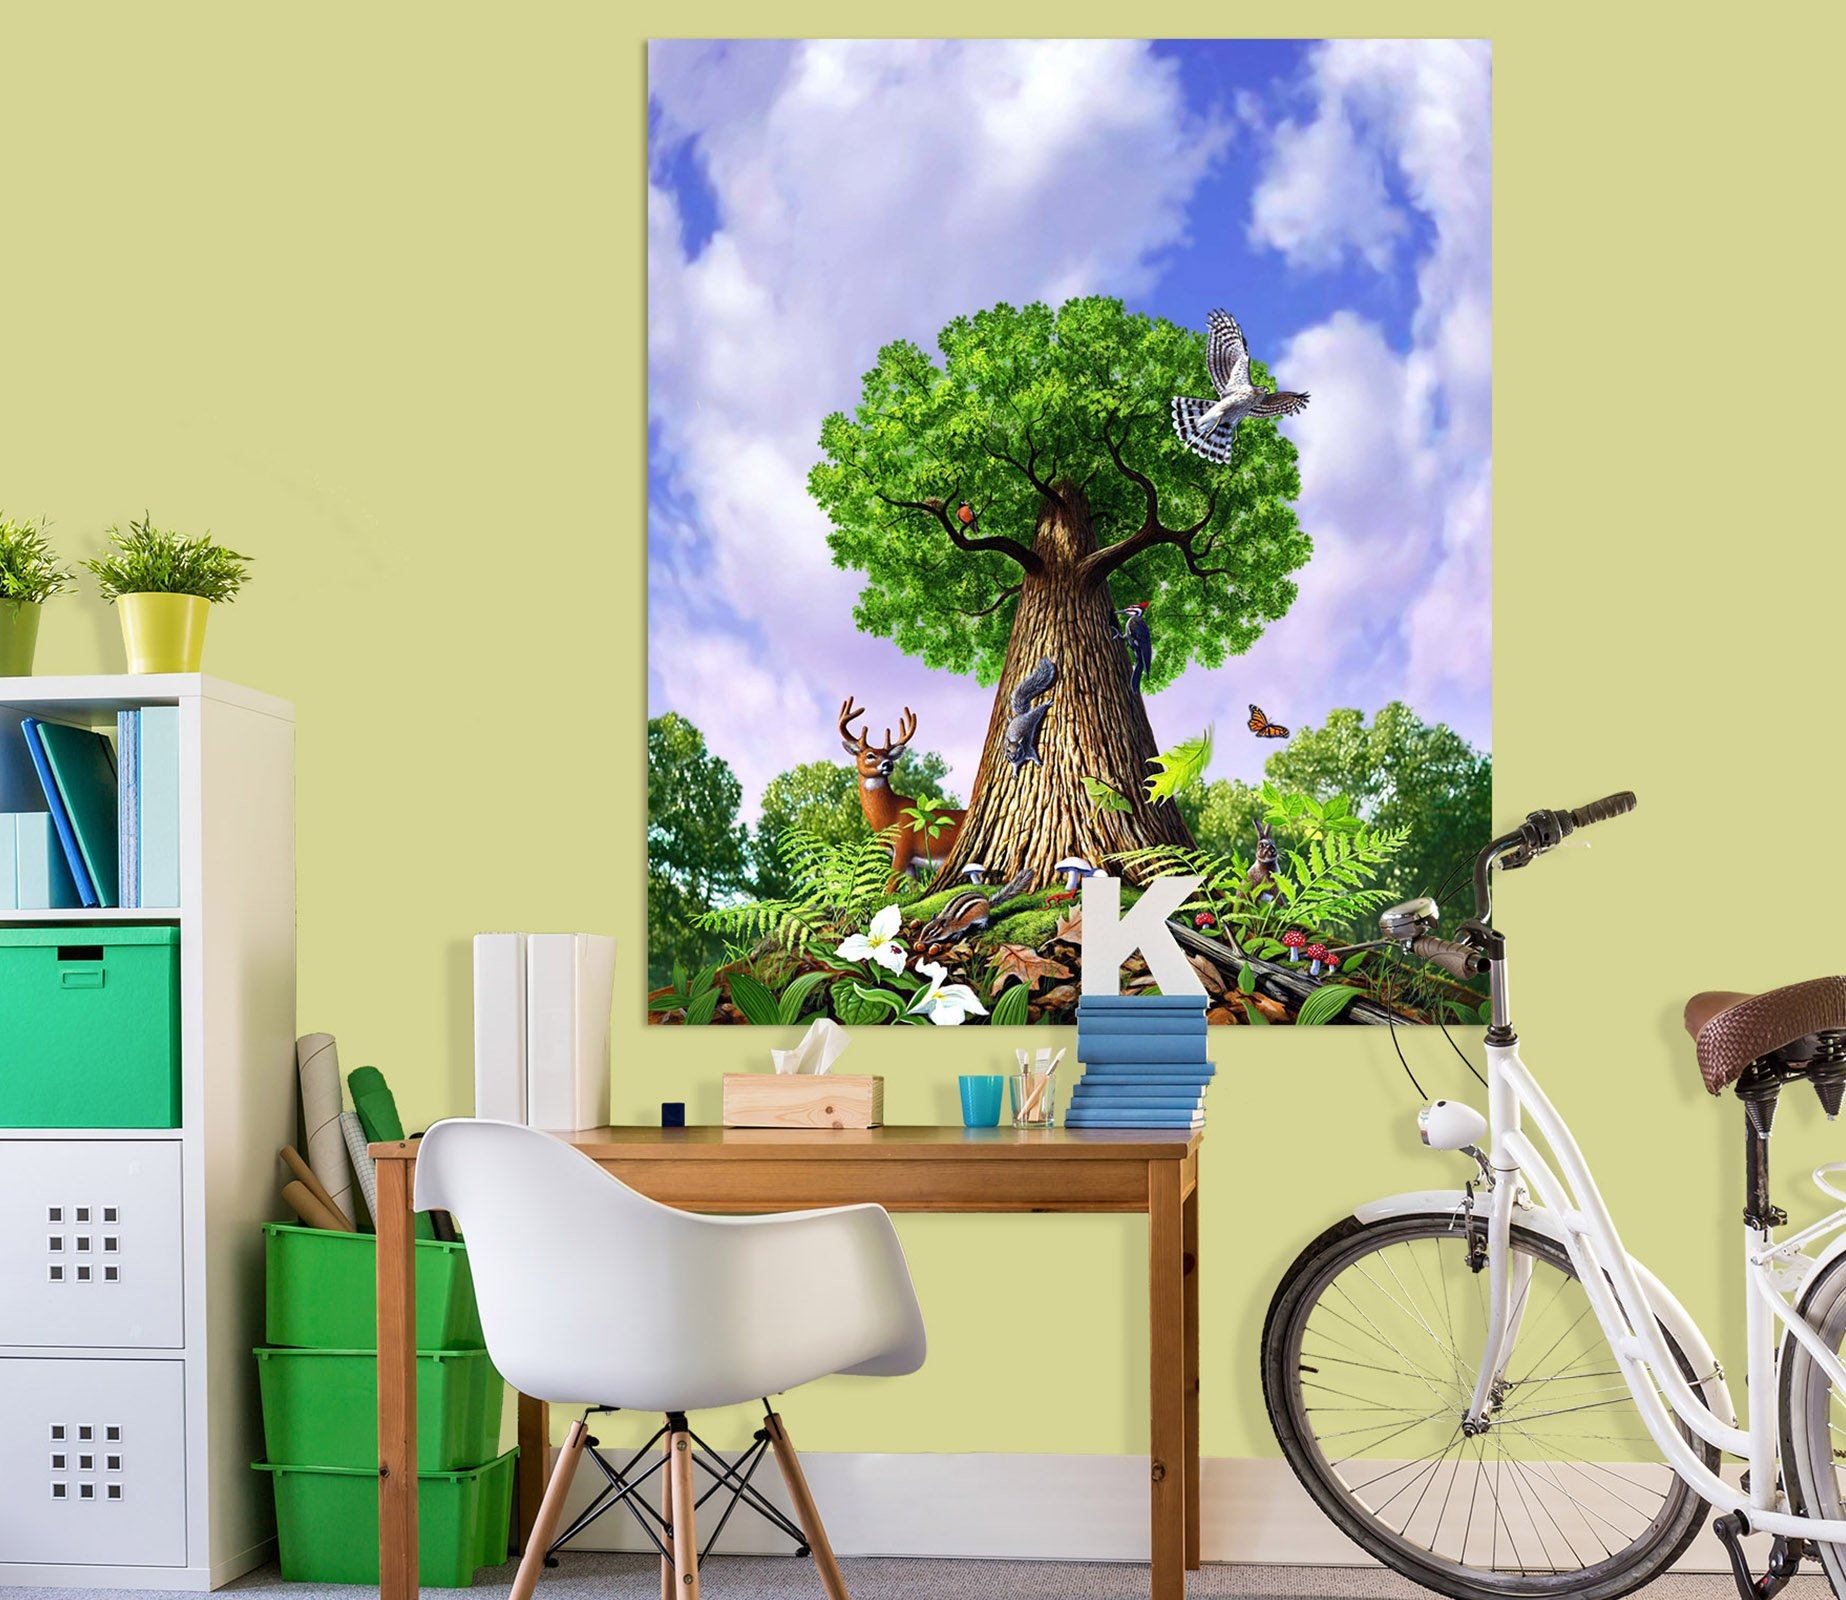 3D Big Tree 036 Jerry LoFaro Wall Sticker Wallpaper AJ Wallpaper 2 